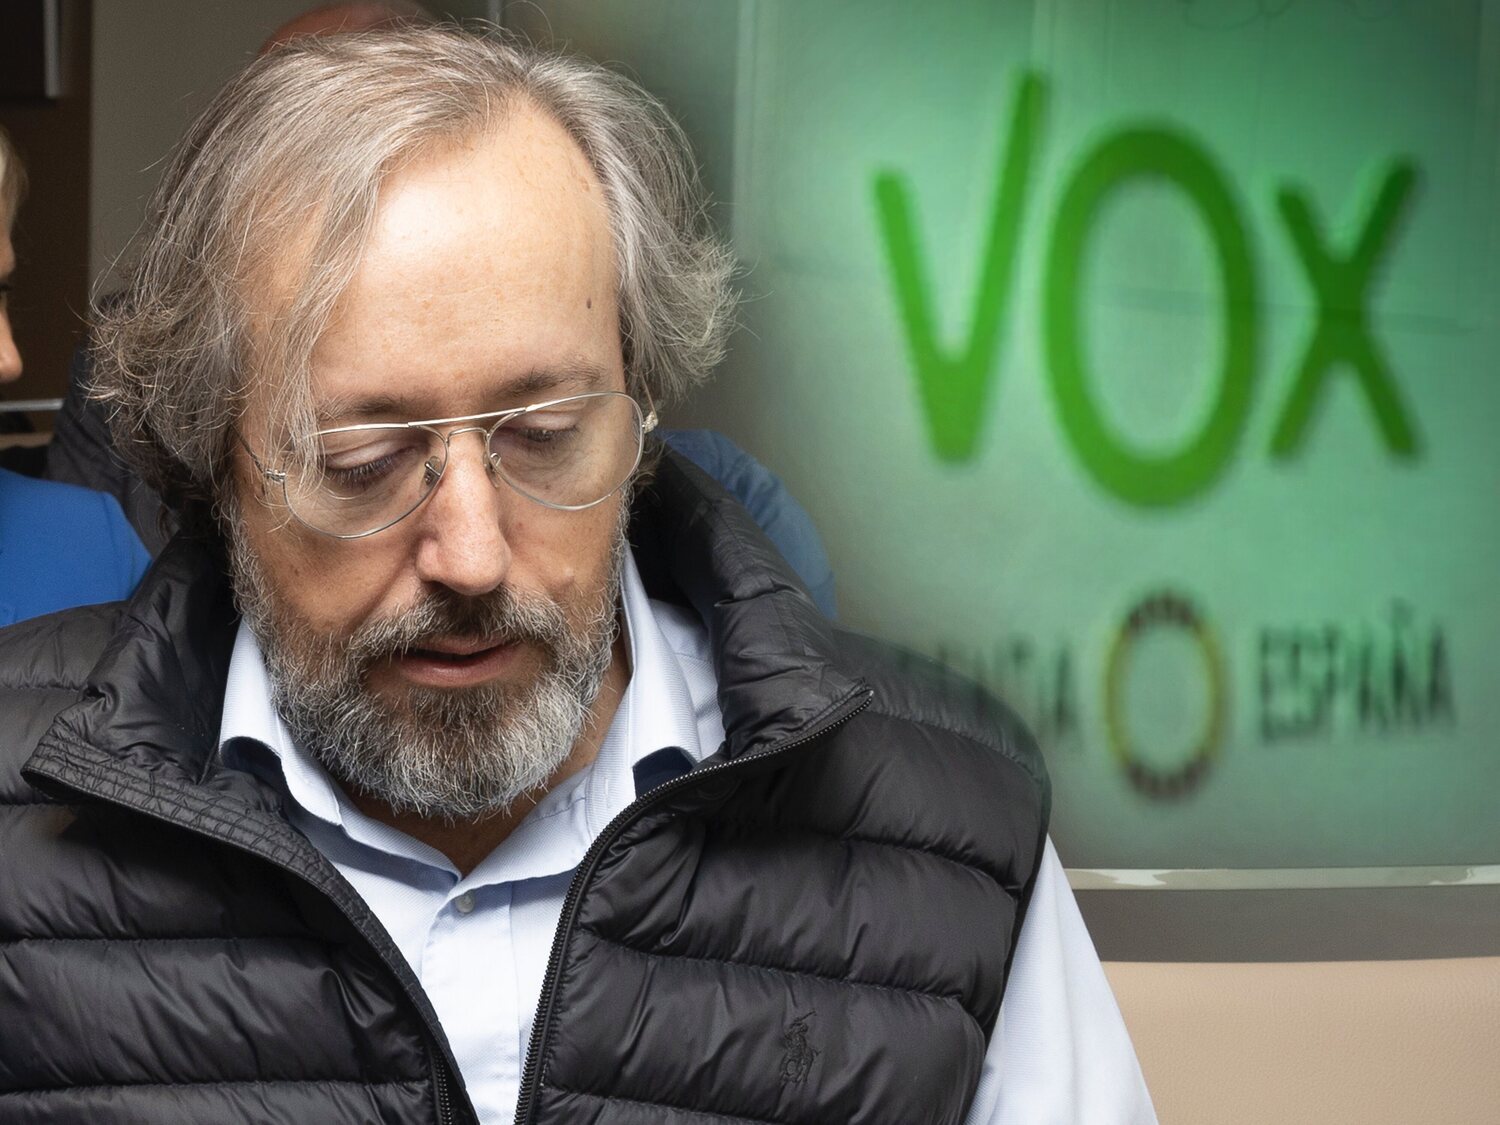 Juan Carlos Girauta ficha VOX para las europeas y la red se llena de memes